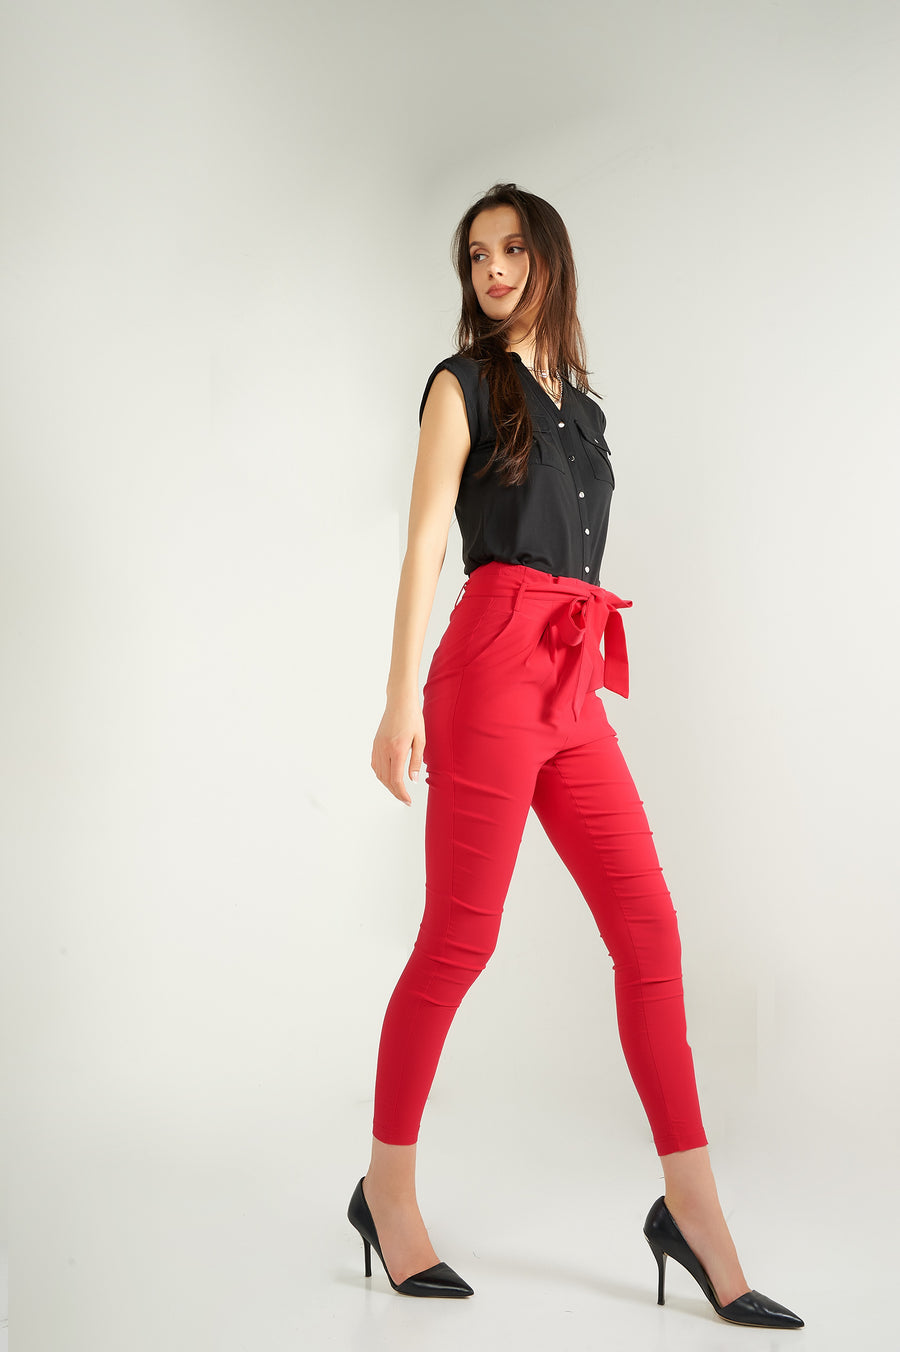 magasinez les pantalons pour femme de chez colori - Shop the women's pants from colori